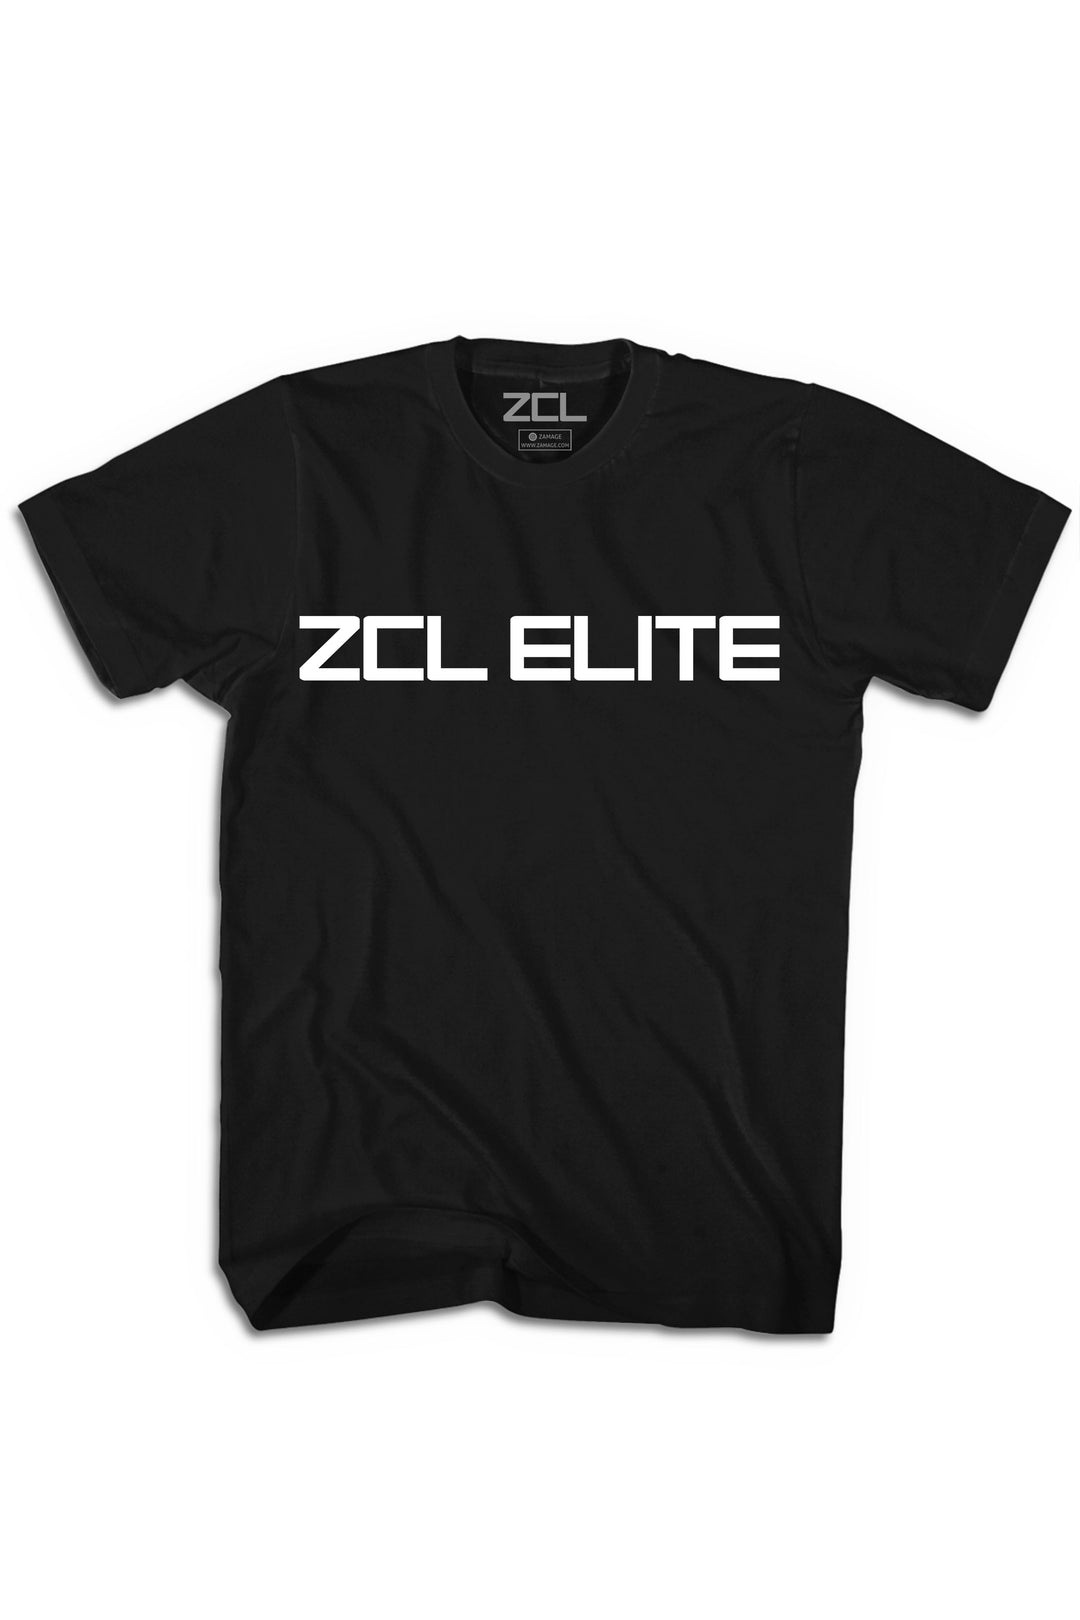 ZCL Elite Tee (White Logo) - Zamage